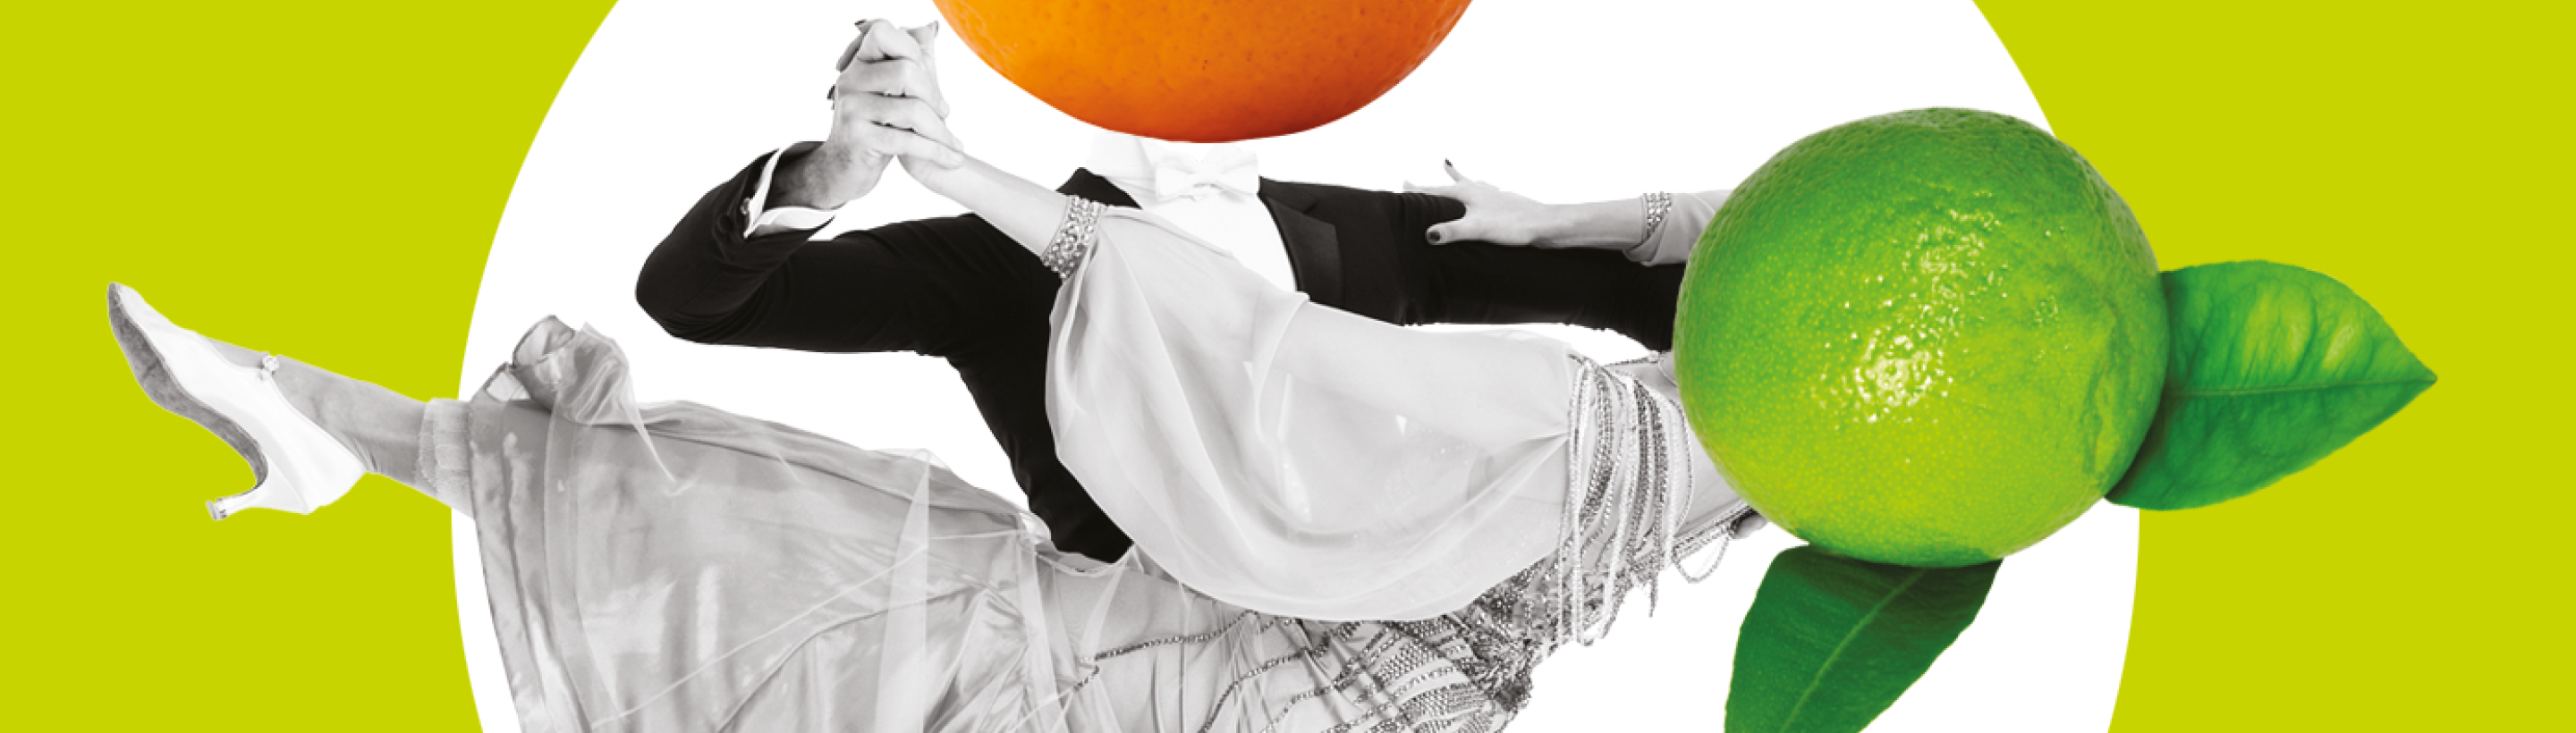 Bannière site web-2880x820-orange lime